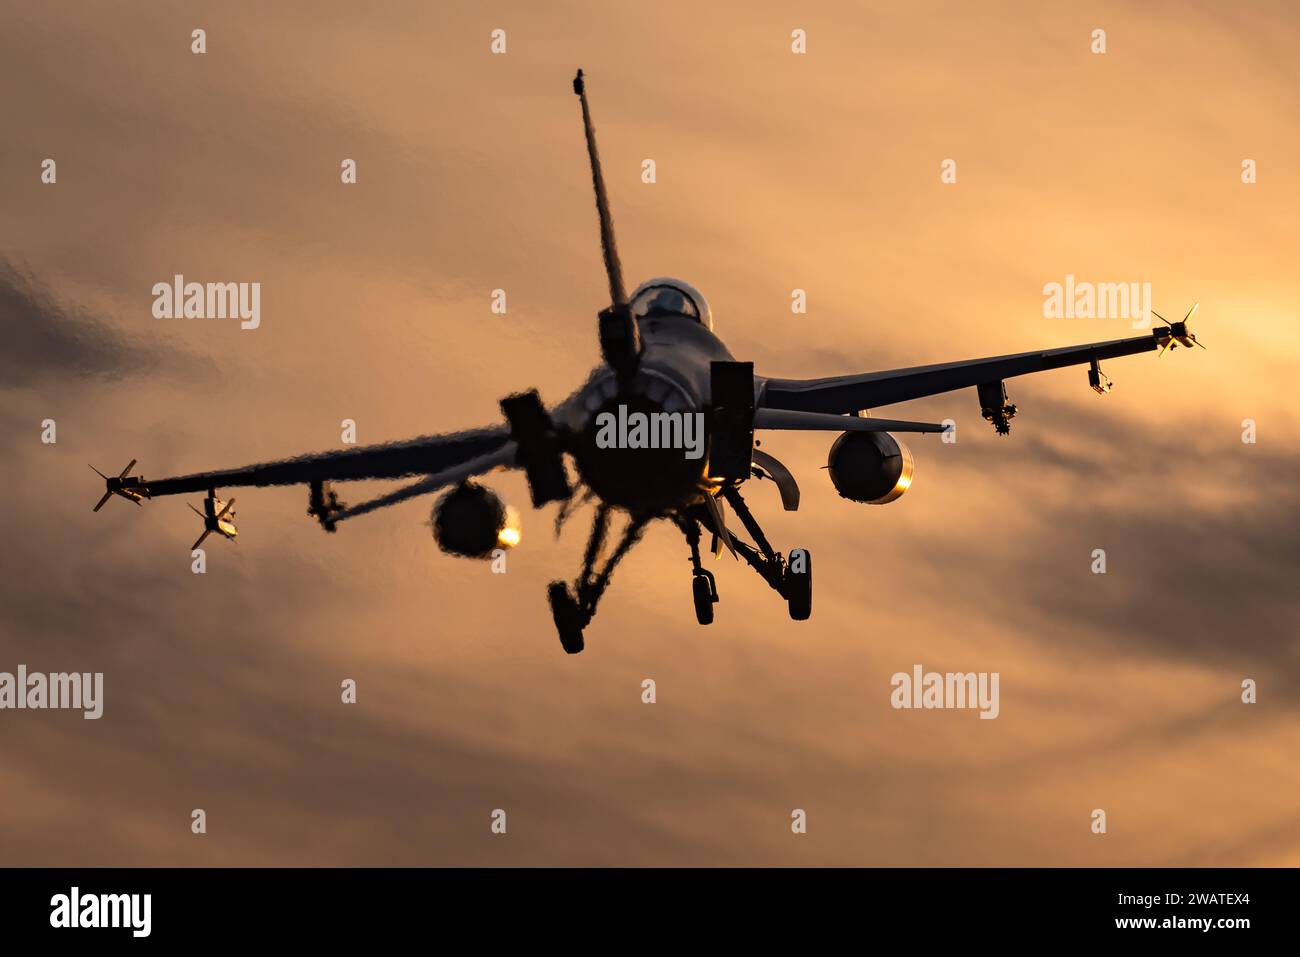 Ein F-16 Kampfflugzeug ist bereit, bei einem wunderschönen Sonnenuntergang auf einem Luftwaffenstützpunkt zu landen. Stockfoto